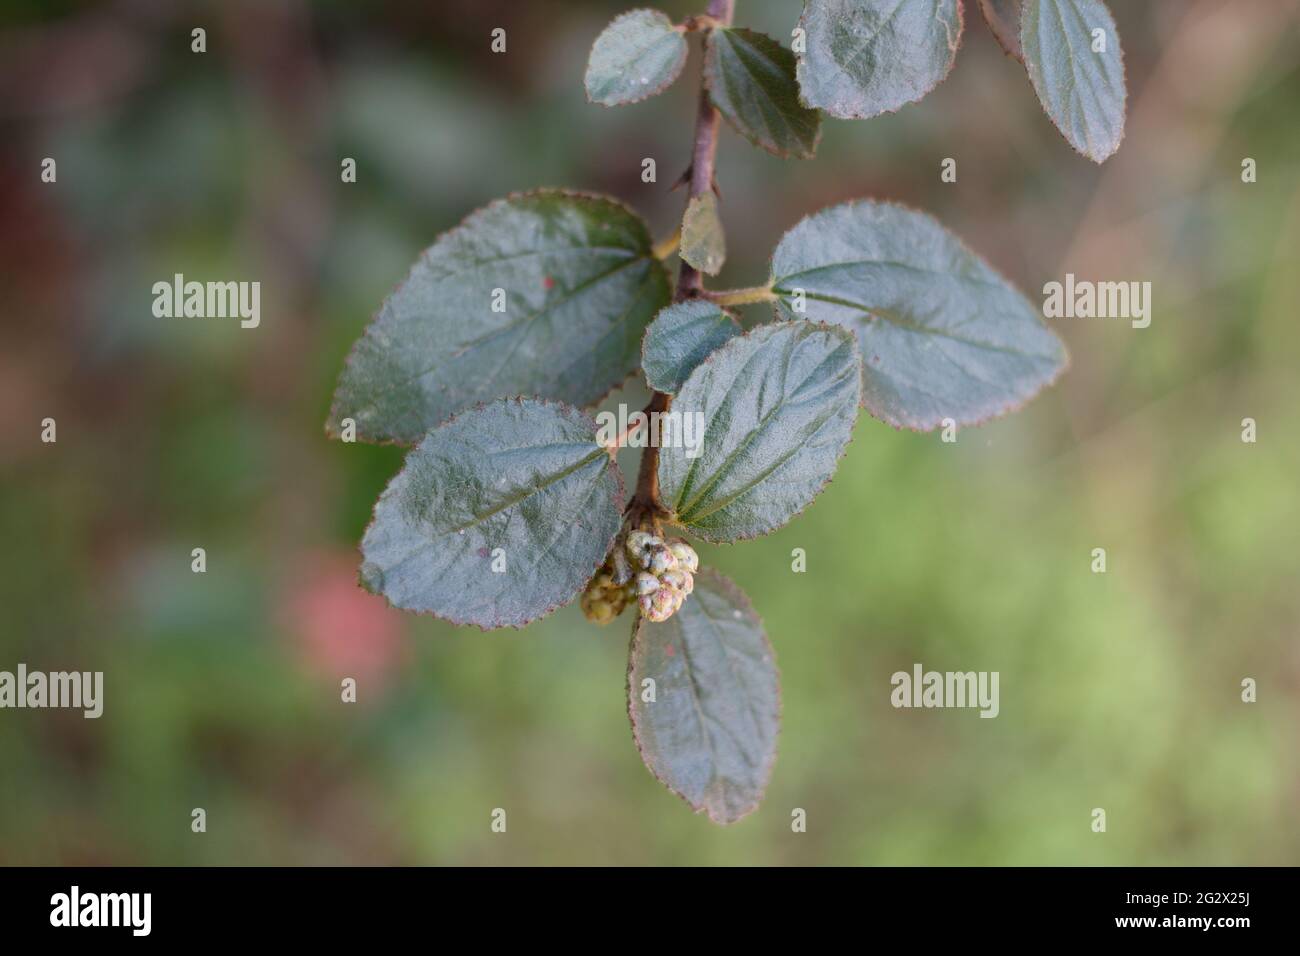 Distal akute proximal breite, abgerundete Blätter von Hairy Buckbrush, Ceanothus Oliganthus, Rhamnaceae, beheimatet in den Santa Monica Mountains, Frühling. Stockfoto